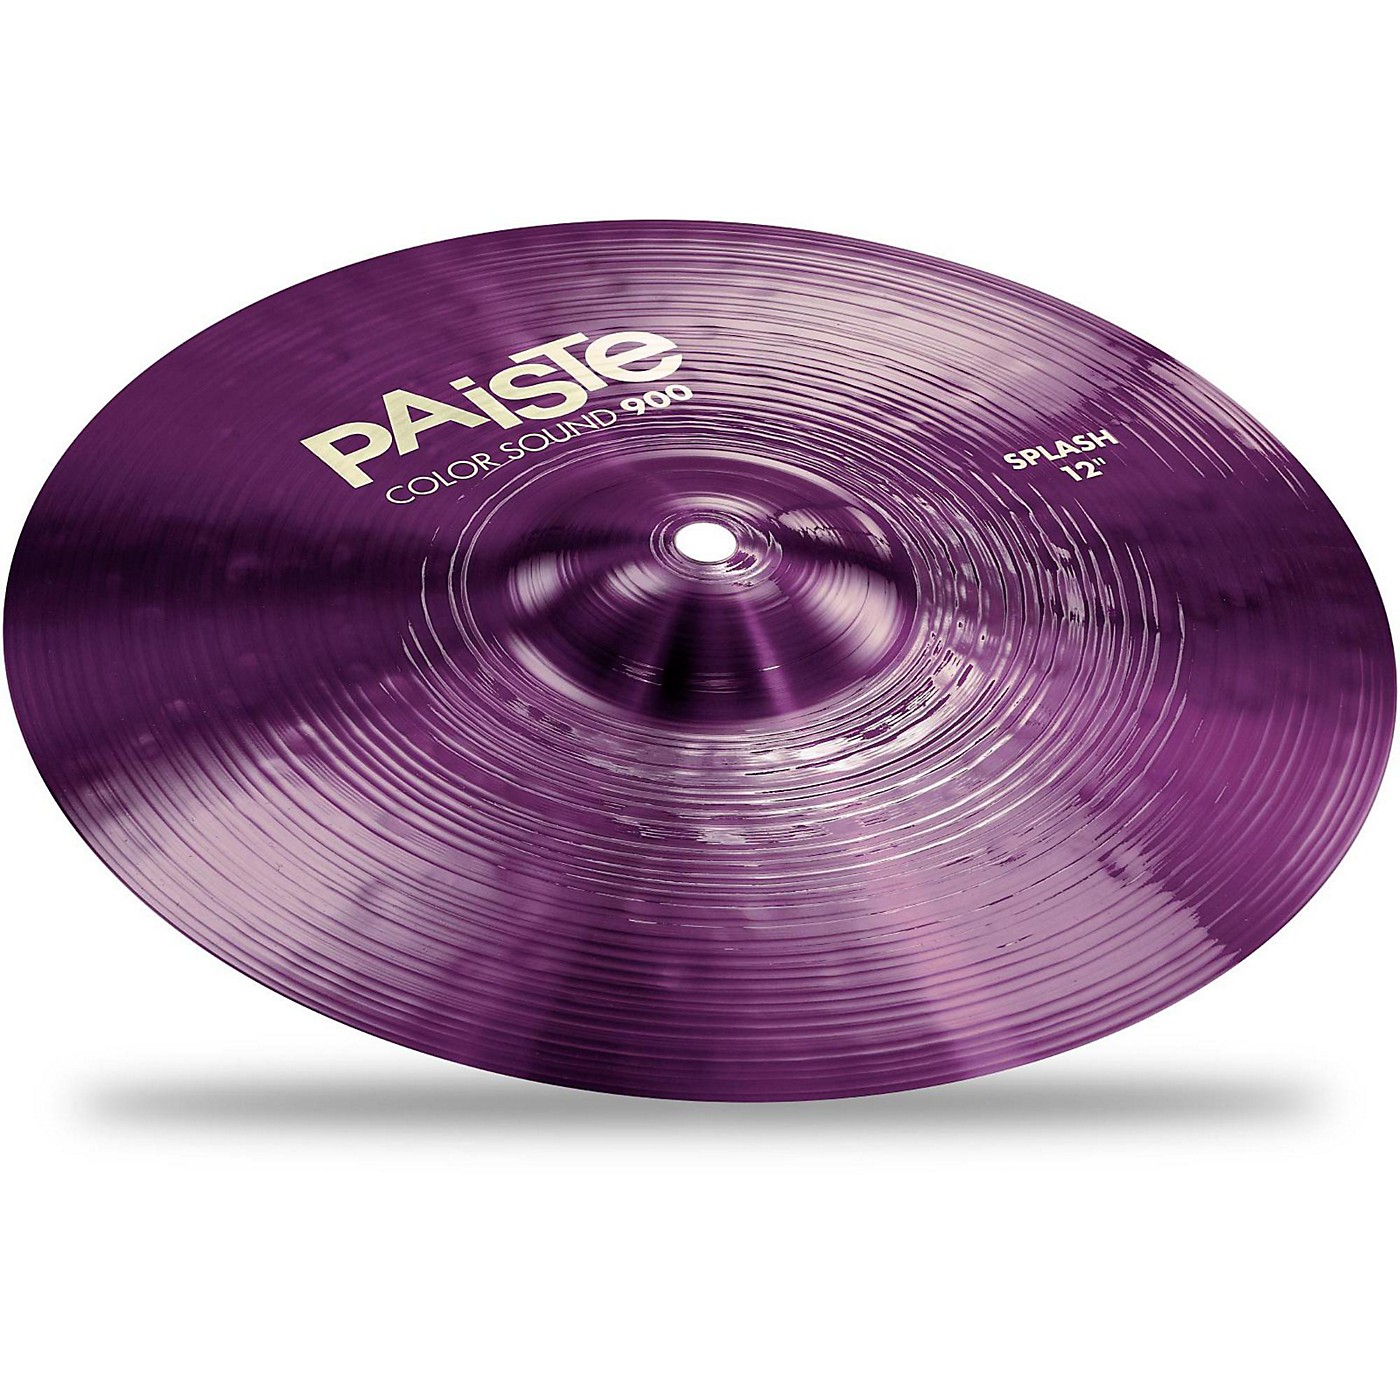 Paiste Colorsound 900 Splash Cymbal Purple thumbnail